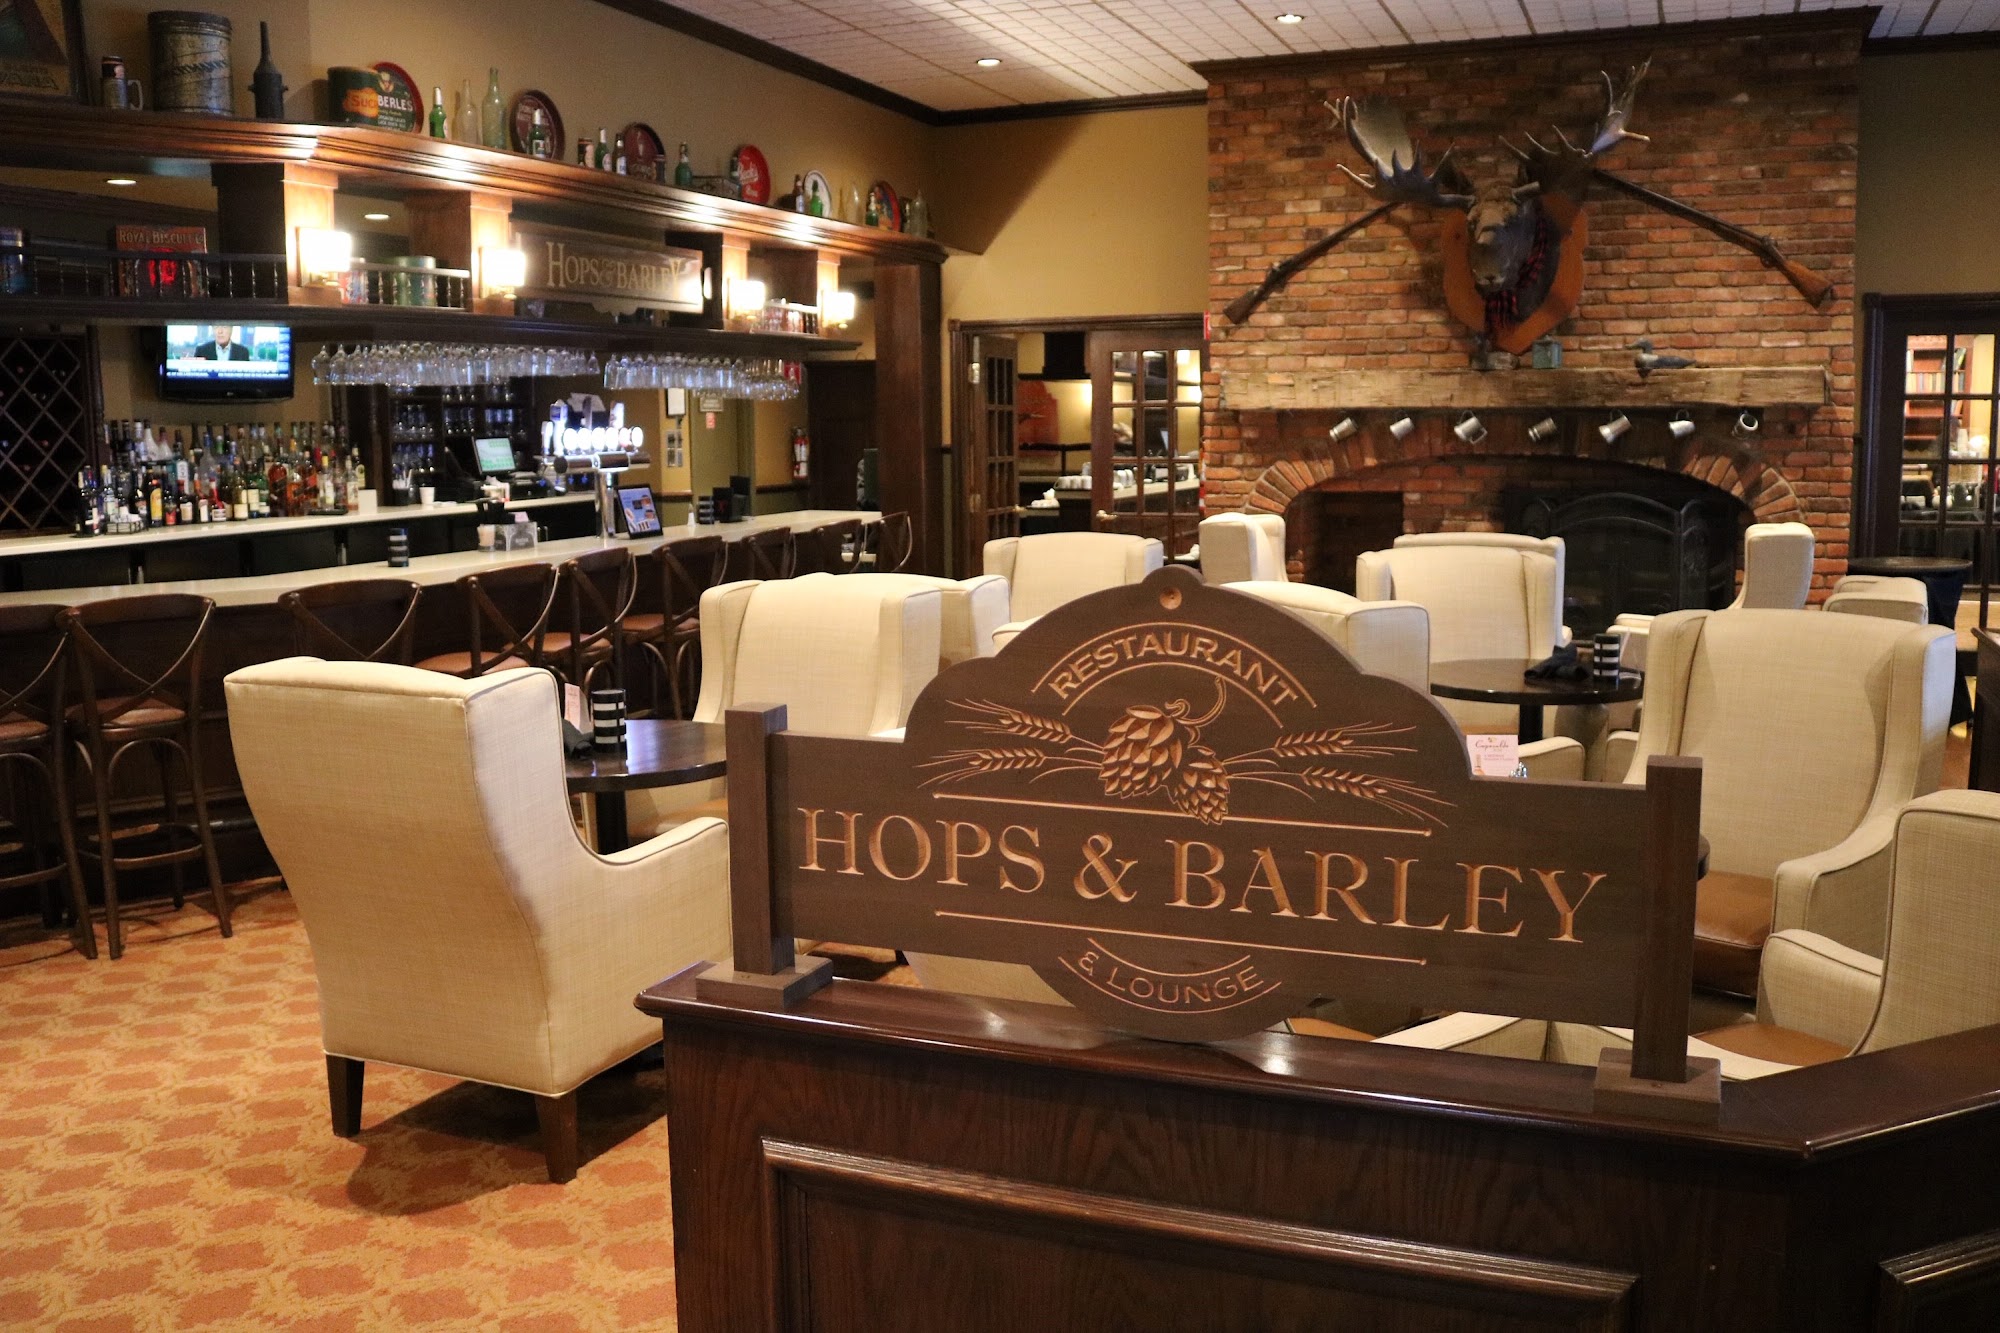 Hops & Barley Restaurant & Lounge